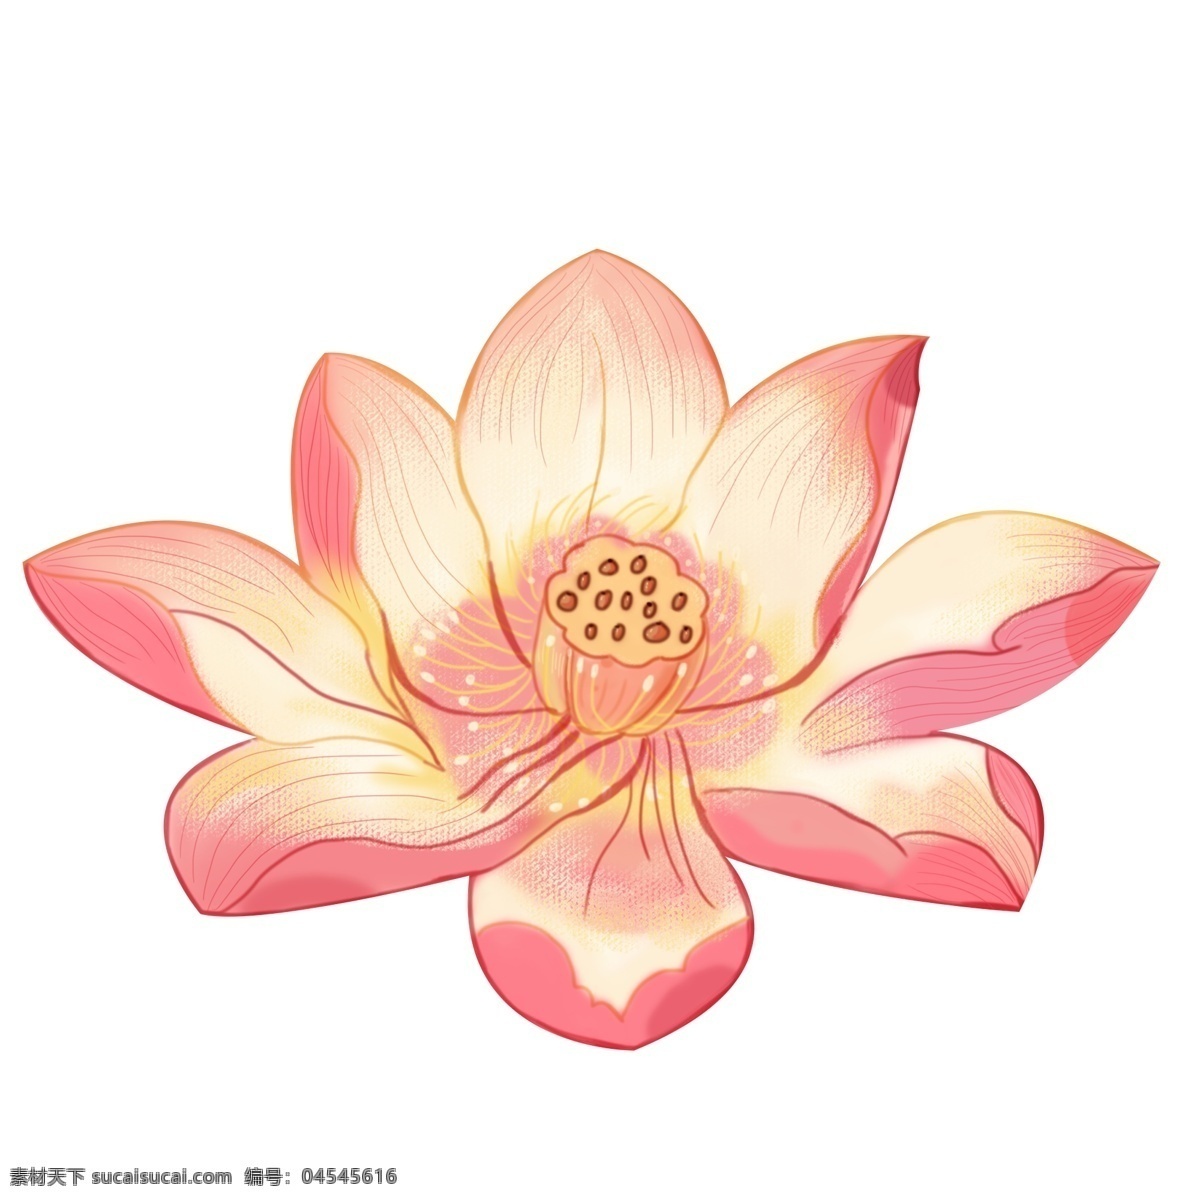 精美 荷花 插画 图案 植物 粉色 花朵 卡通 彩色 小清新 创意 手绘 元素 现代 简约 装饰